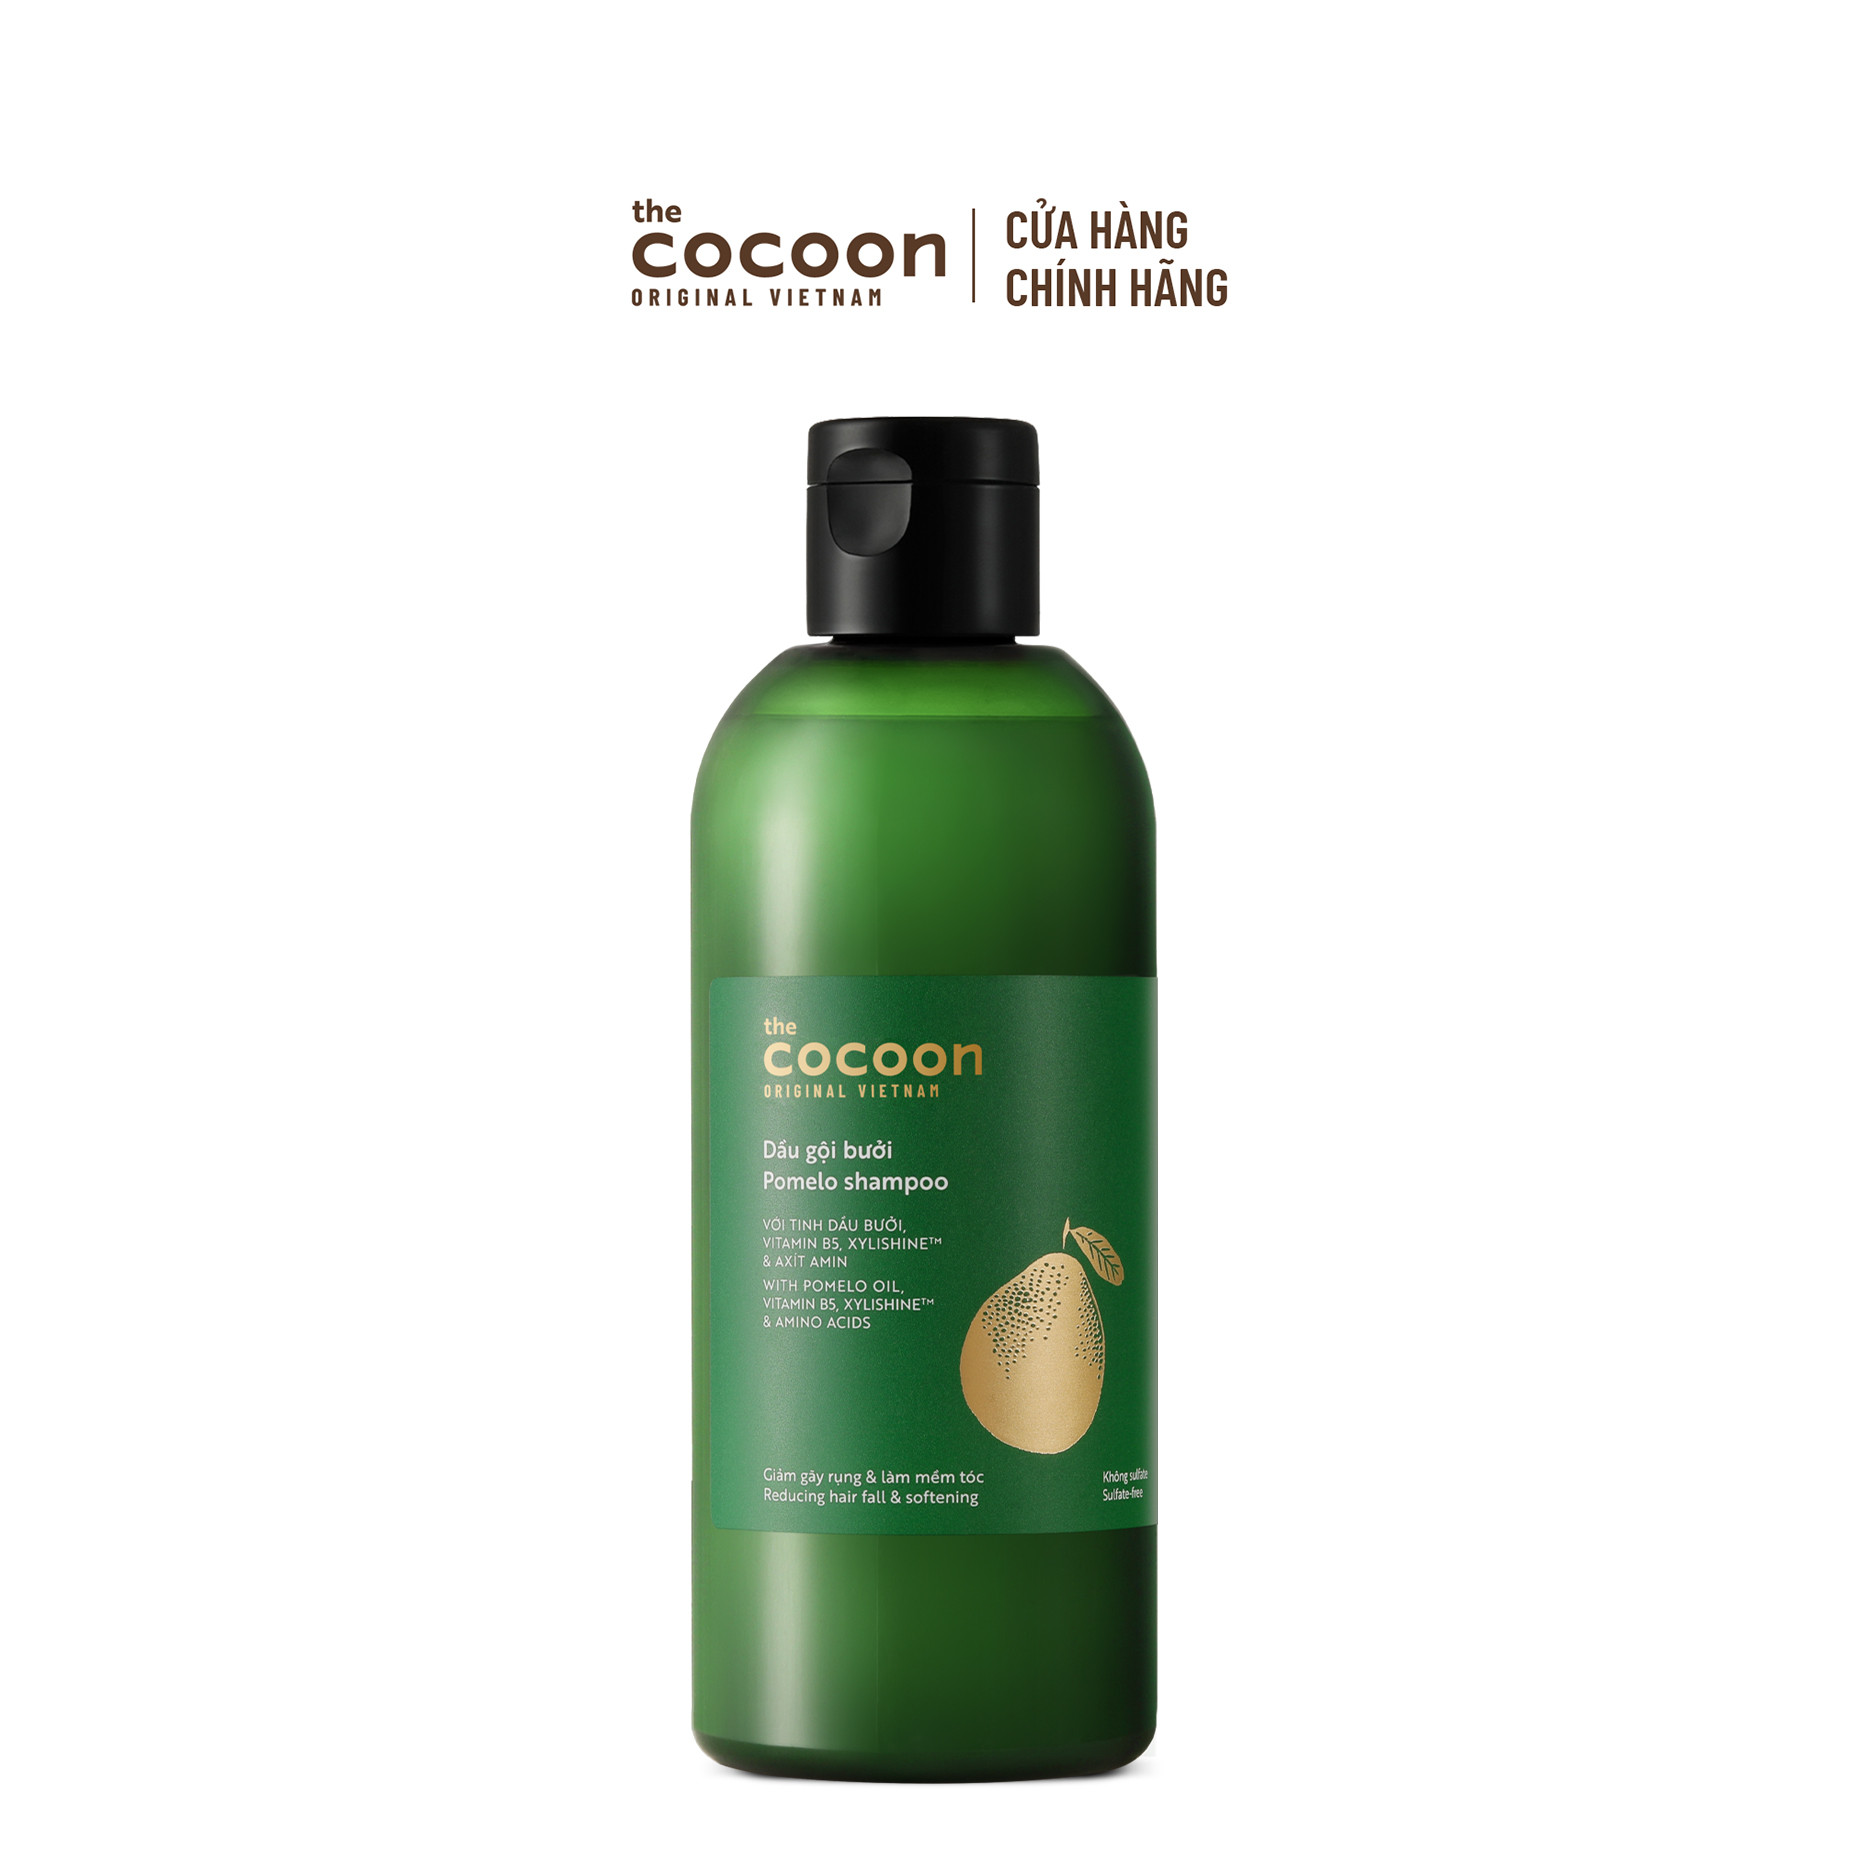 SPECIAL COMBO gội xả bưởi không sulfate giảm gãy rụng tóc Cocoon - tặng 1 Serum Sachi phục hồi tóc Cocoon 70ml